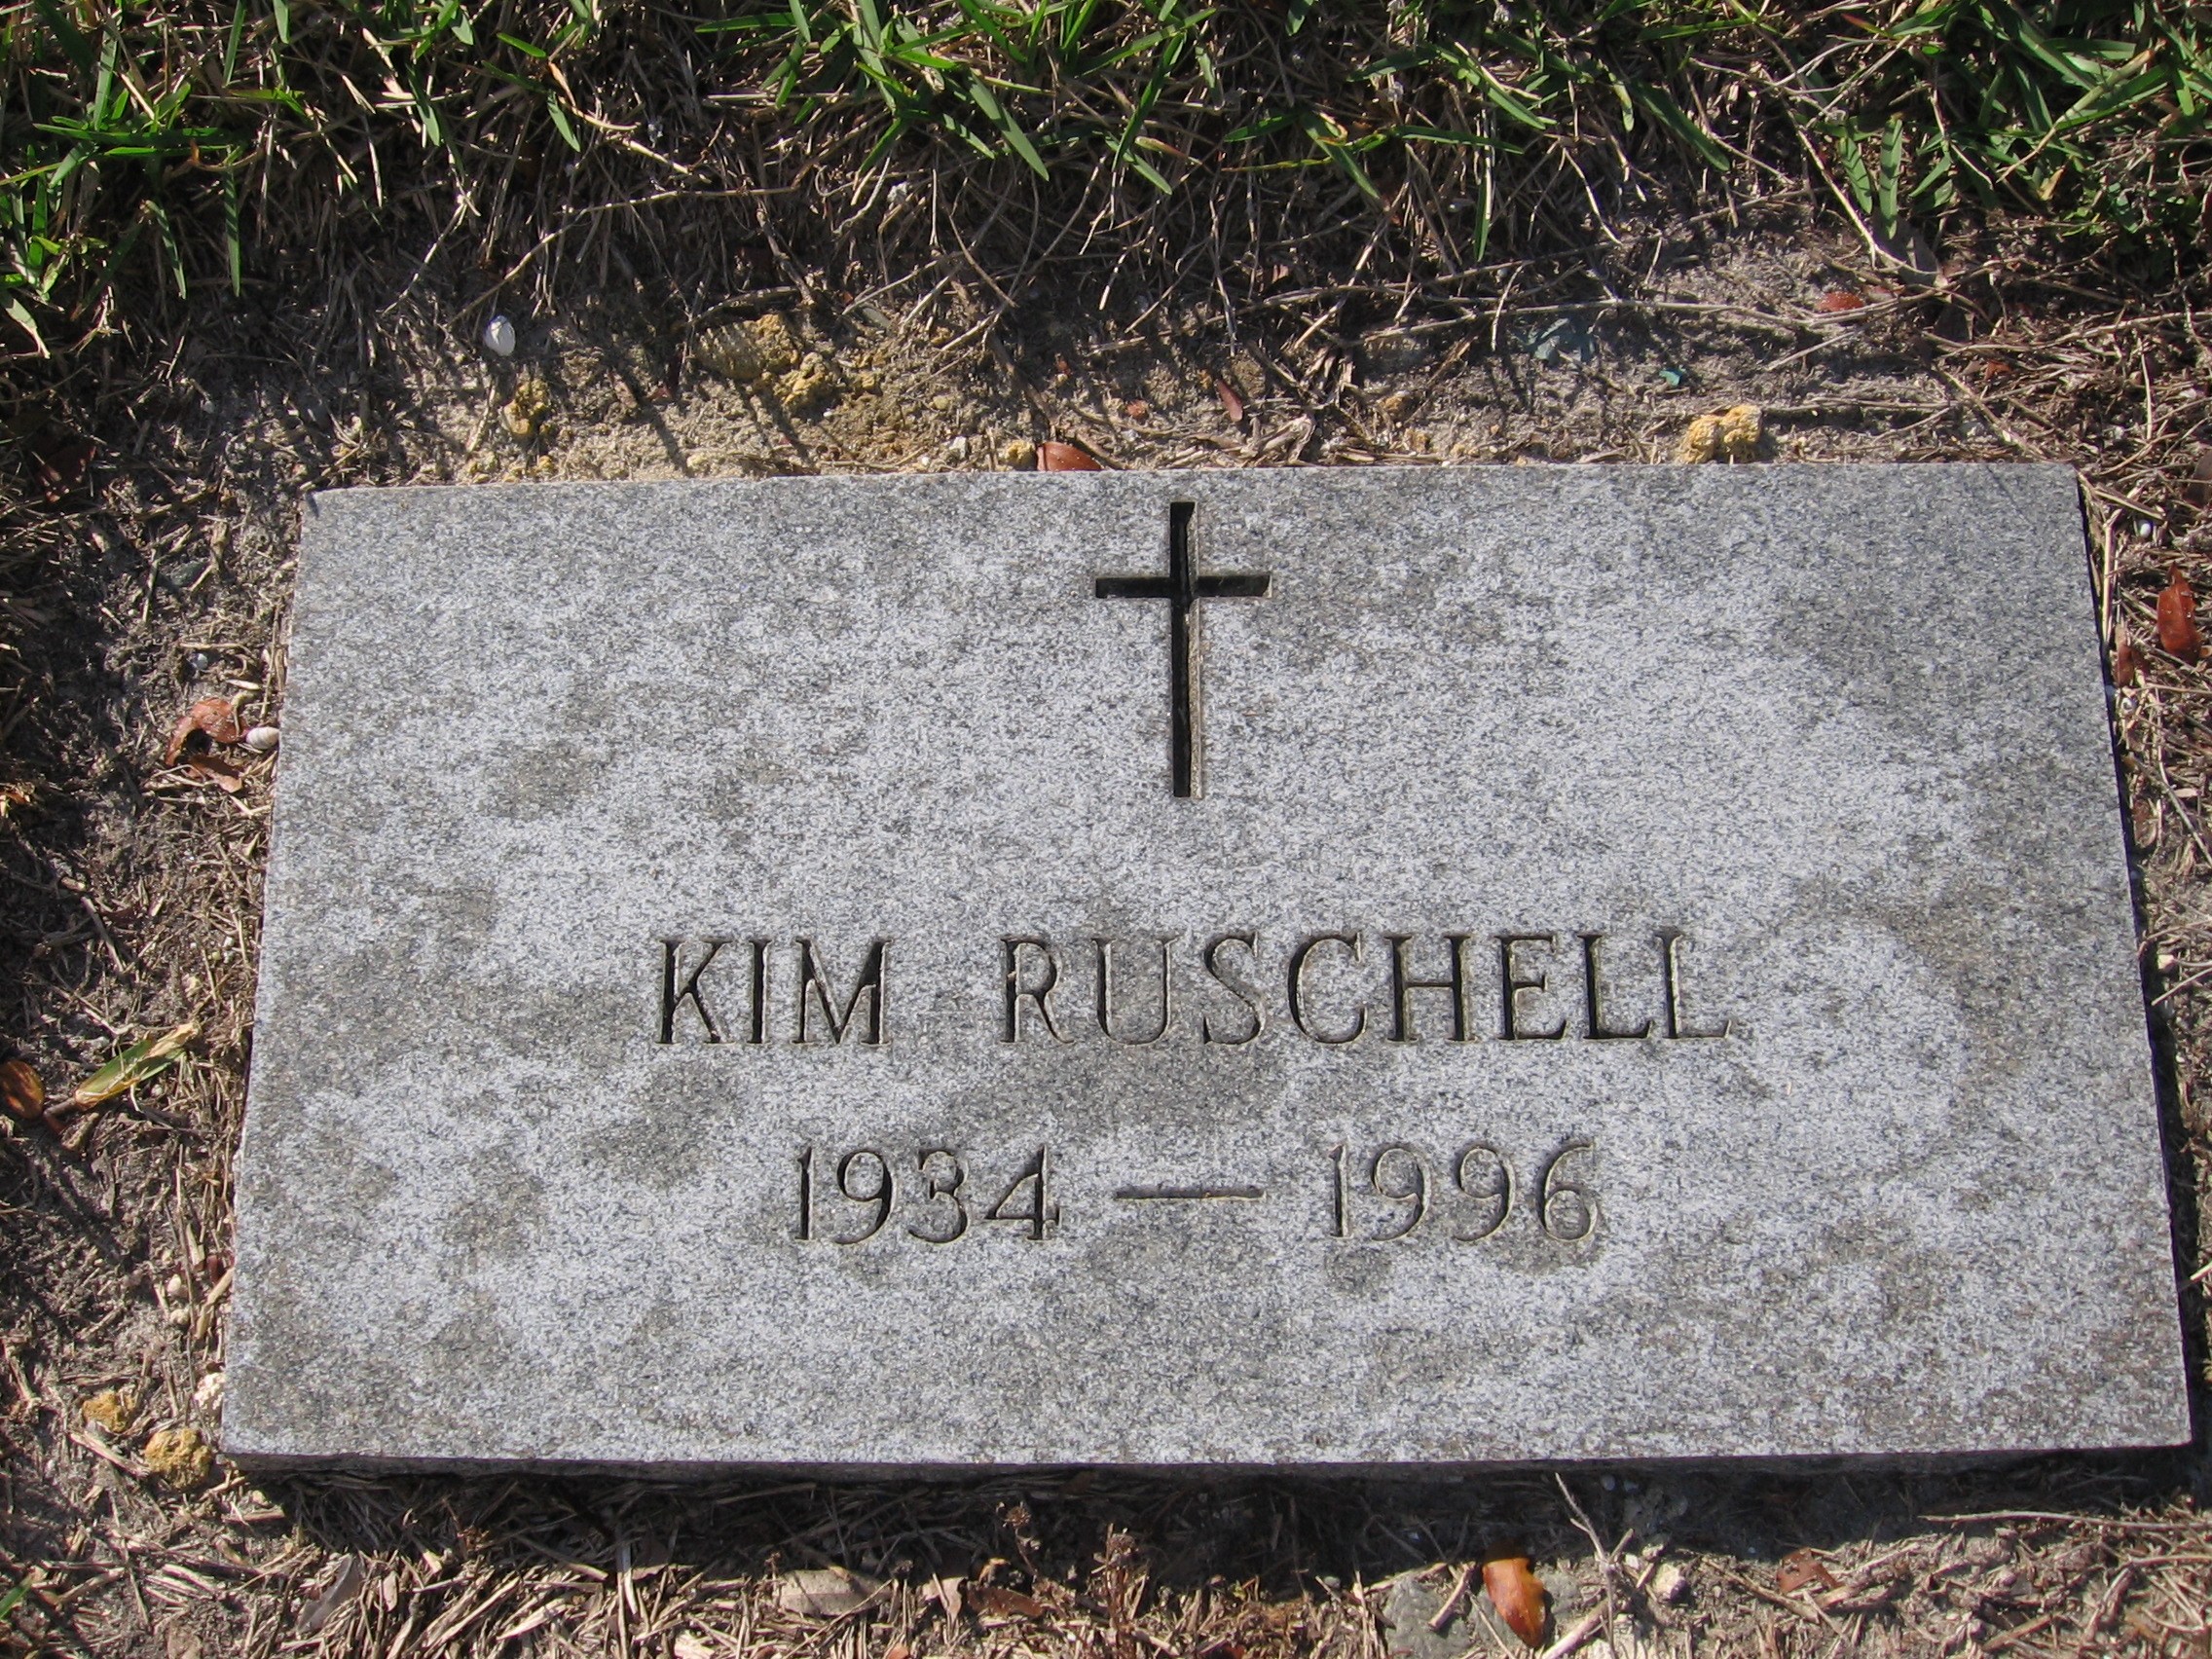 Kim Ruschell